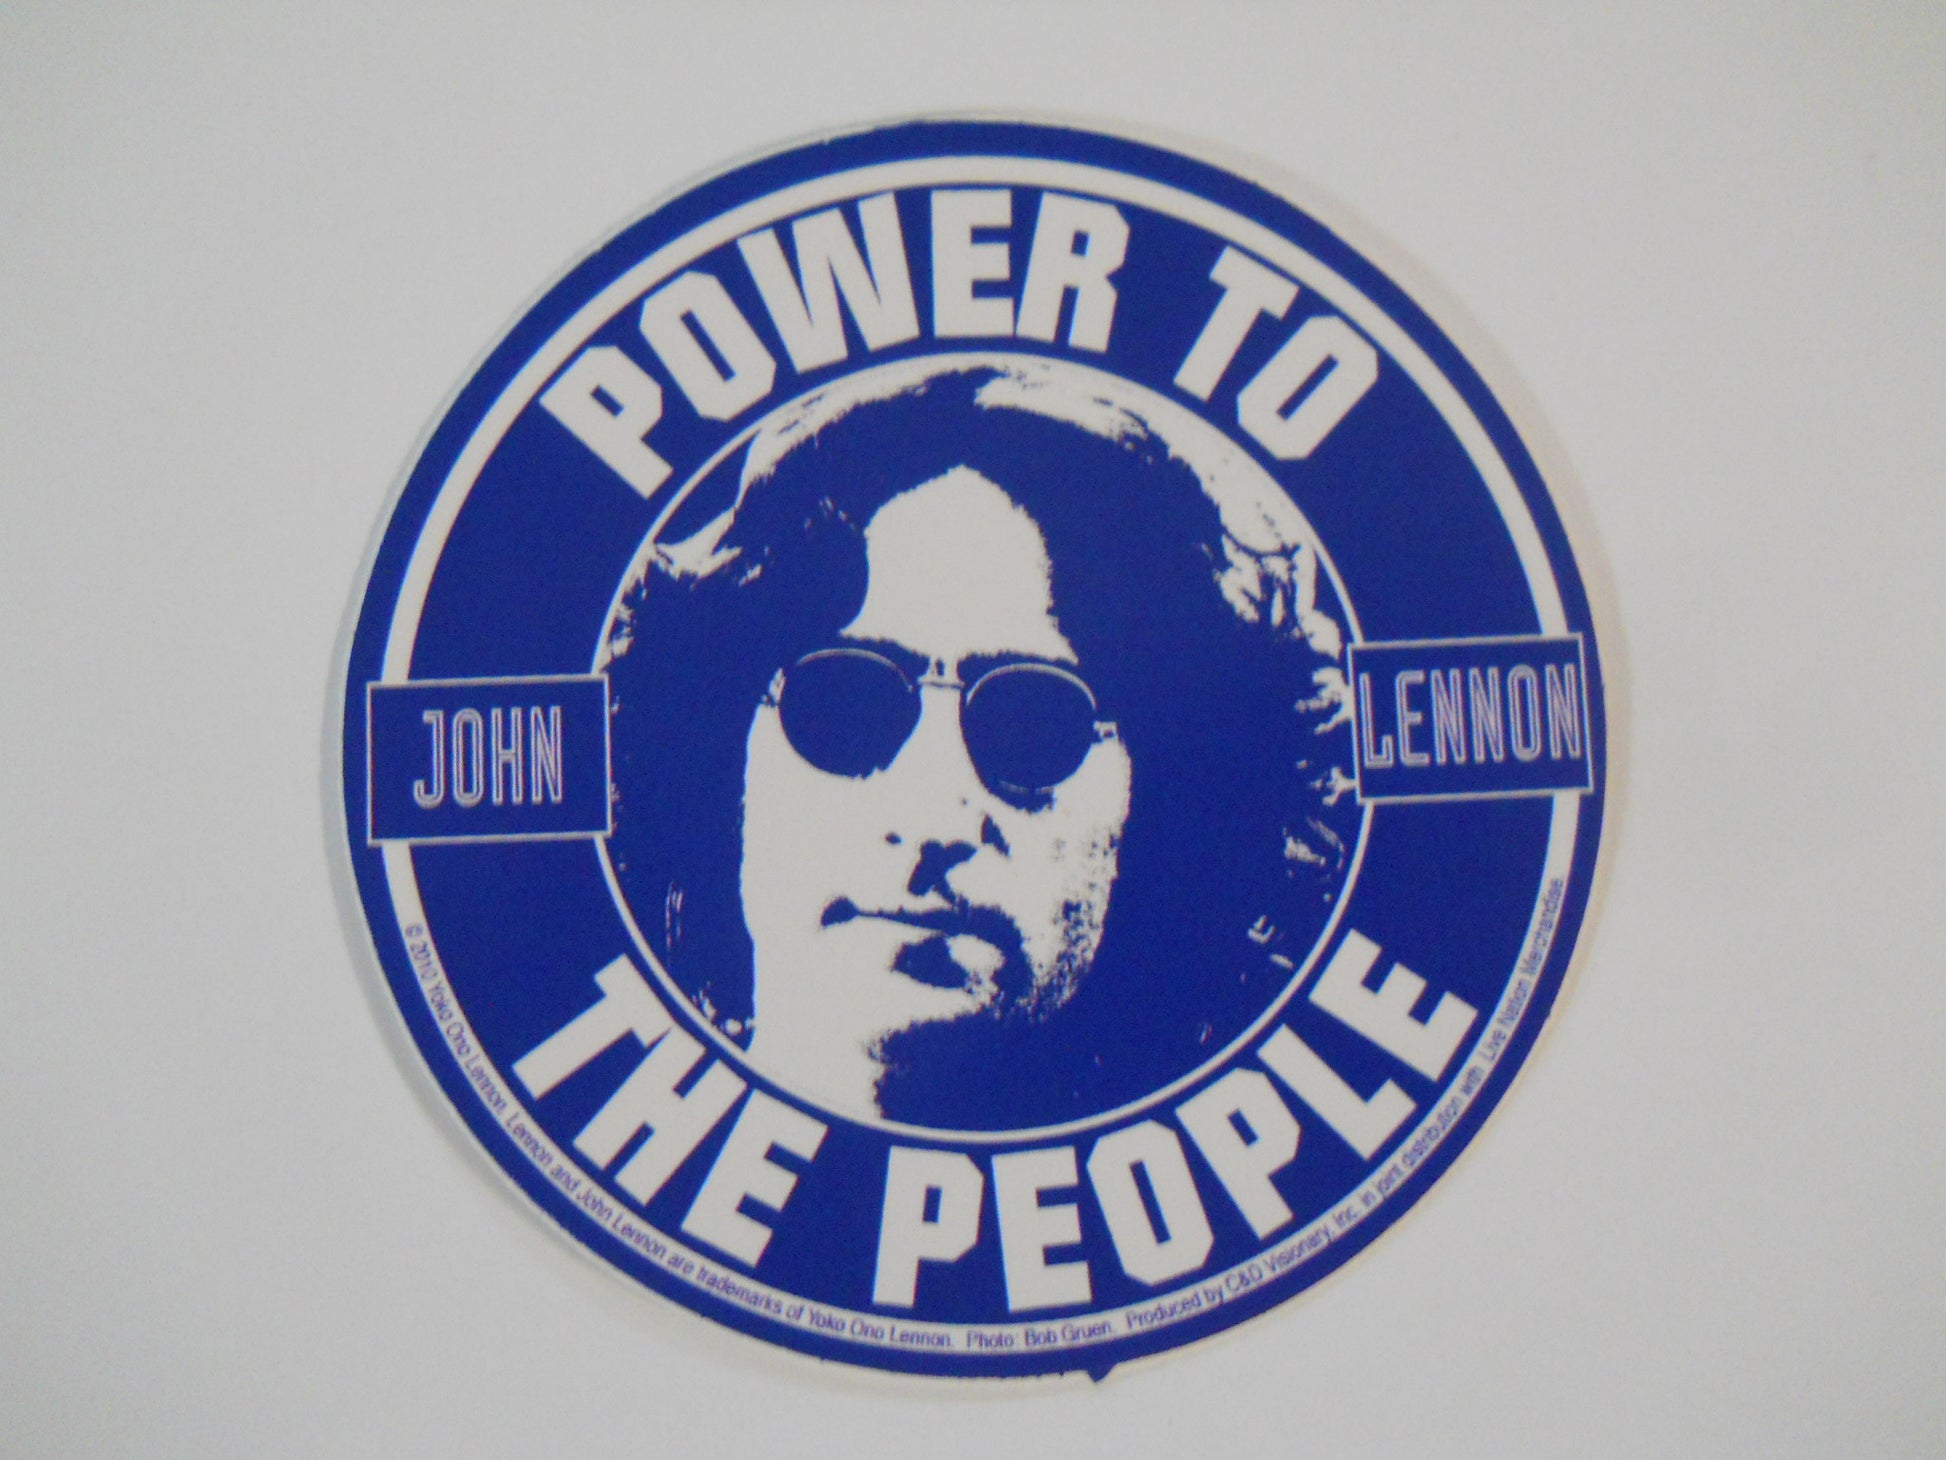 John Lennon Power to the People Sticker - HalfMoonMusic